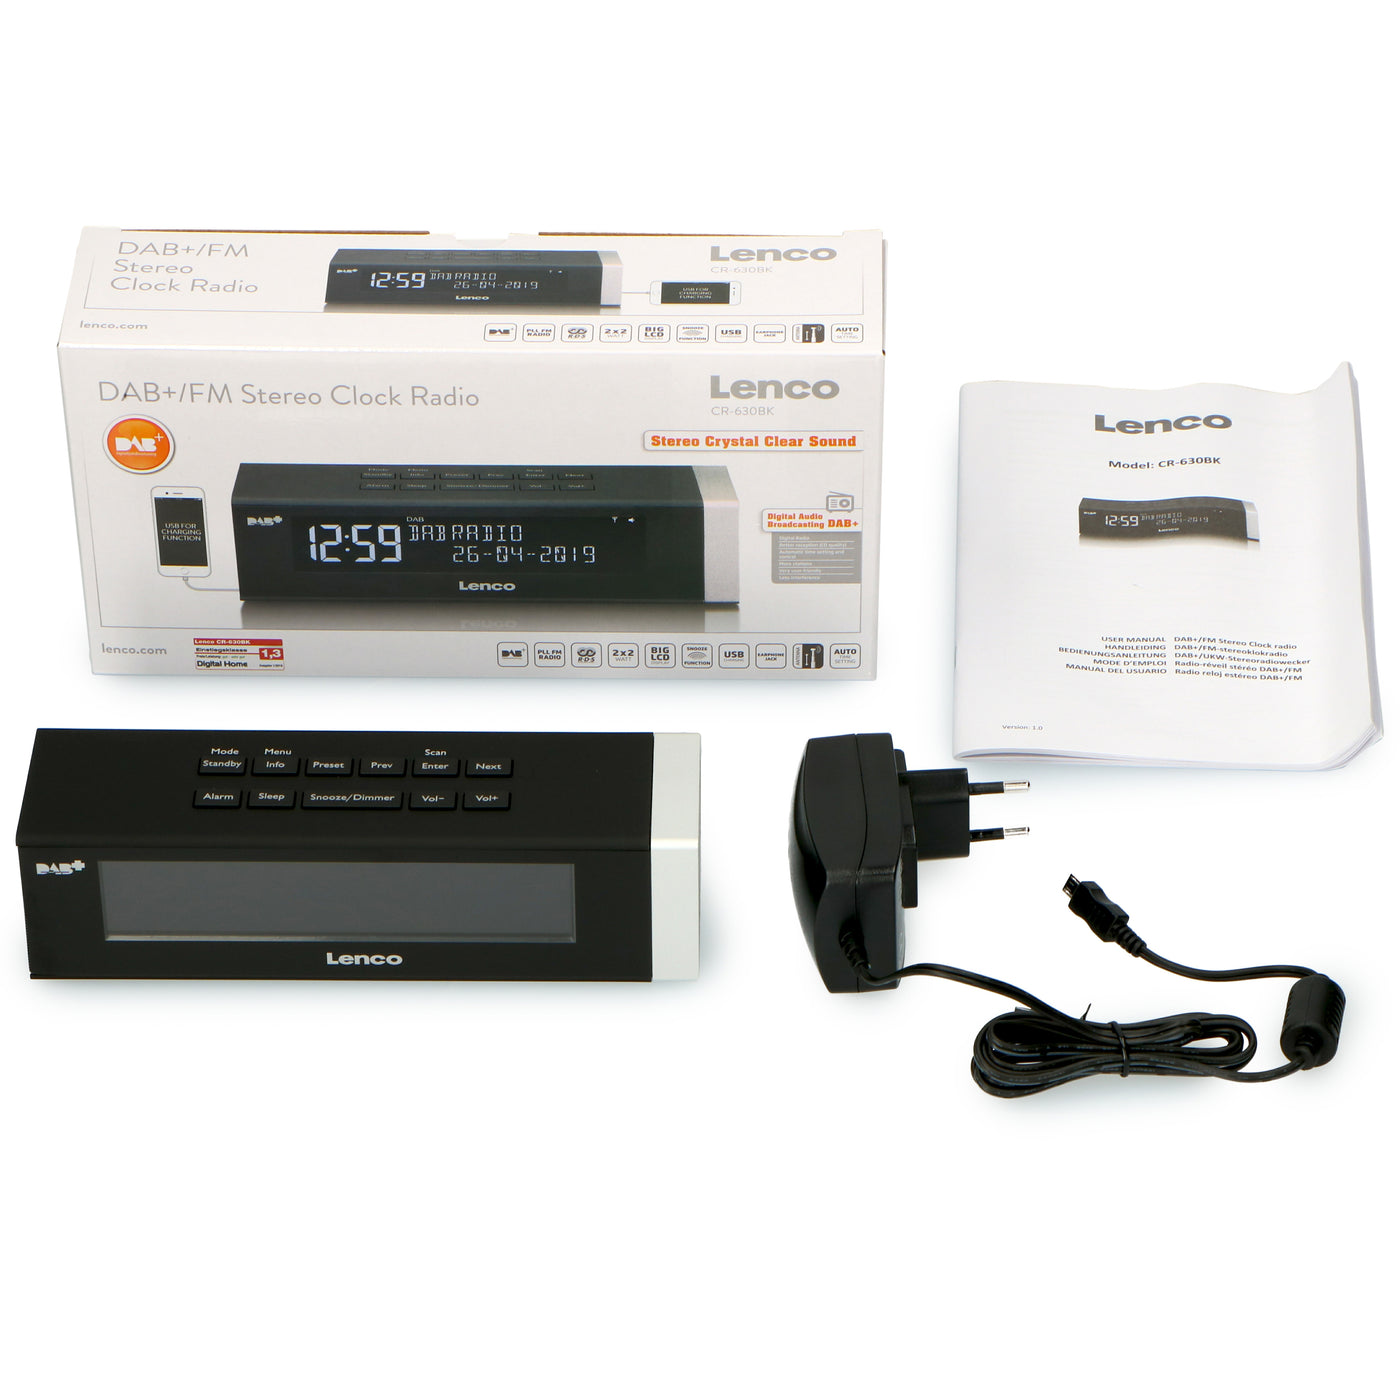 Lenco CR-630BK - Radio-réveil stéréo DAB+/FM avec connexion USB et entrée AUX - Noir